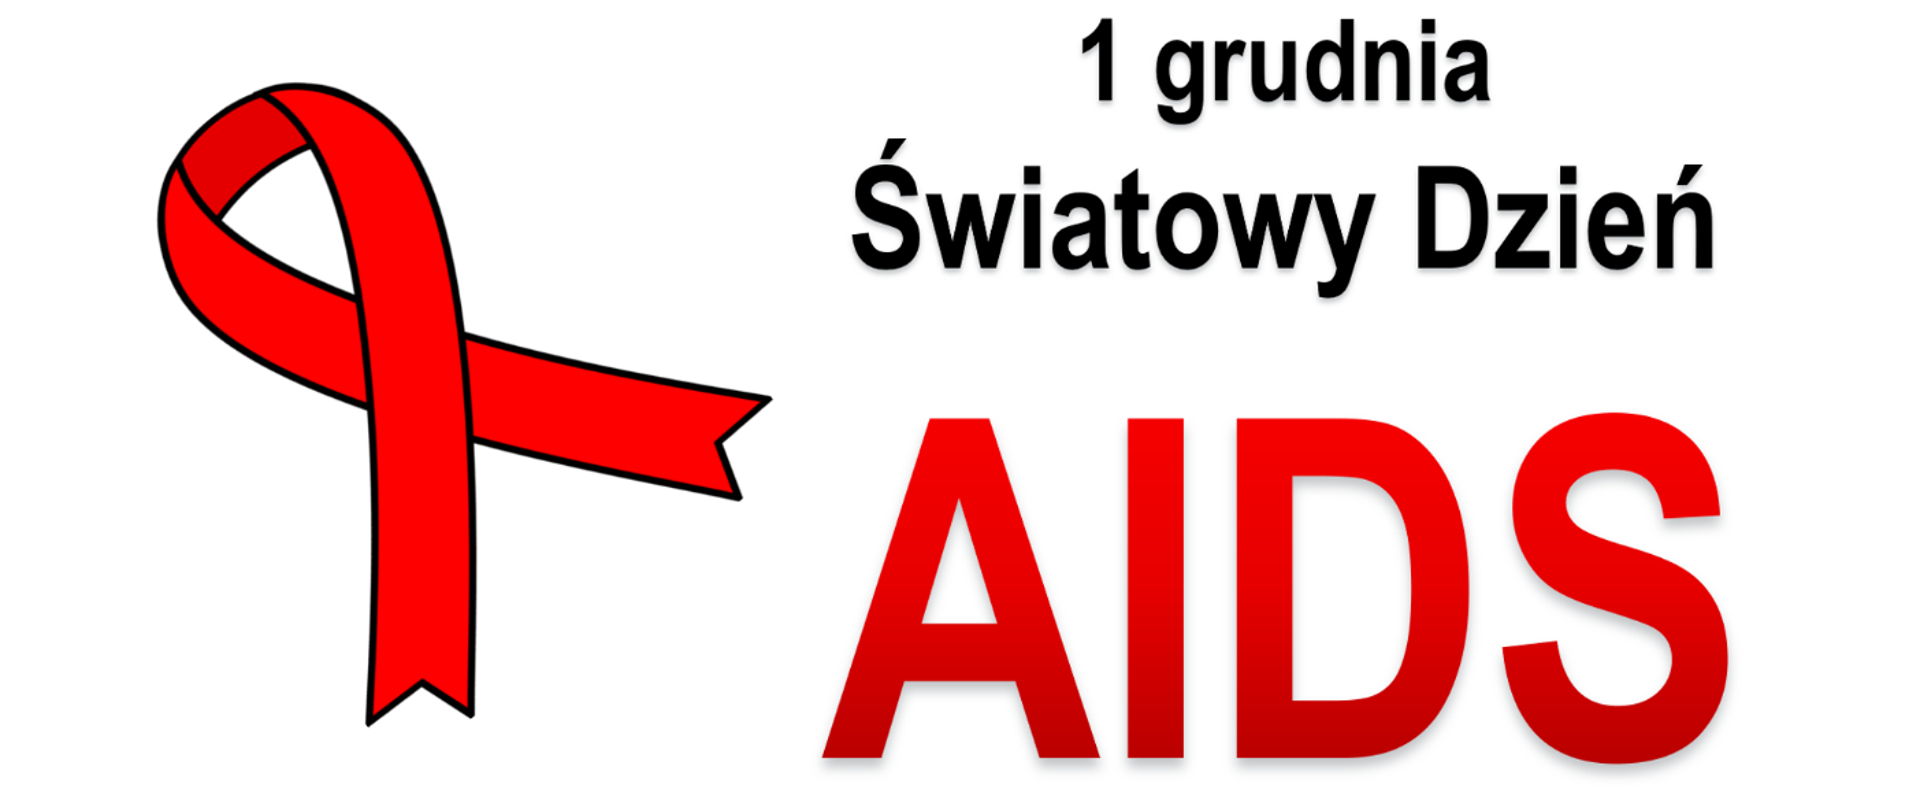 Światowy Dzień AIDS - baner